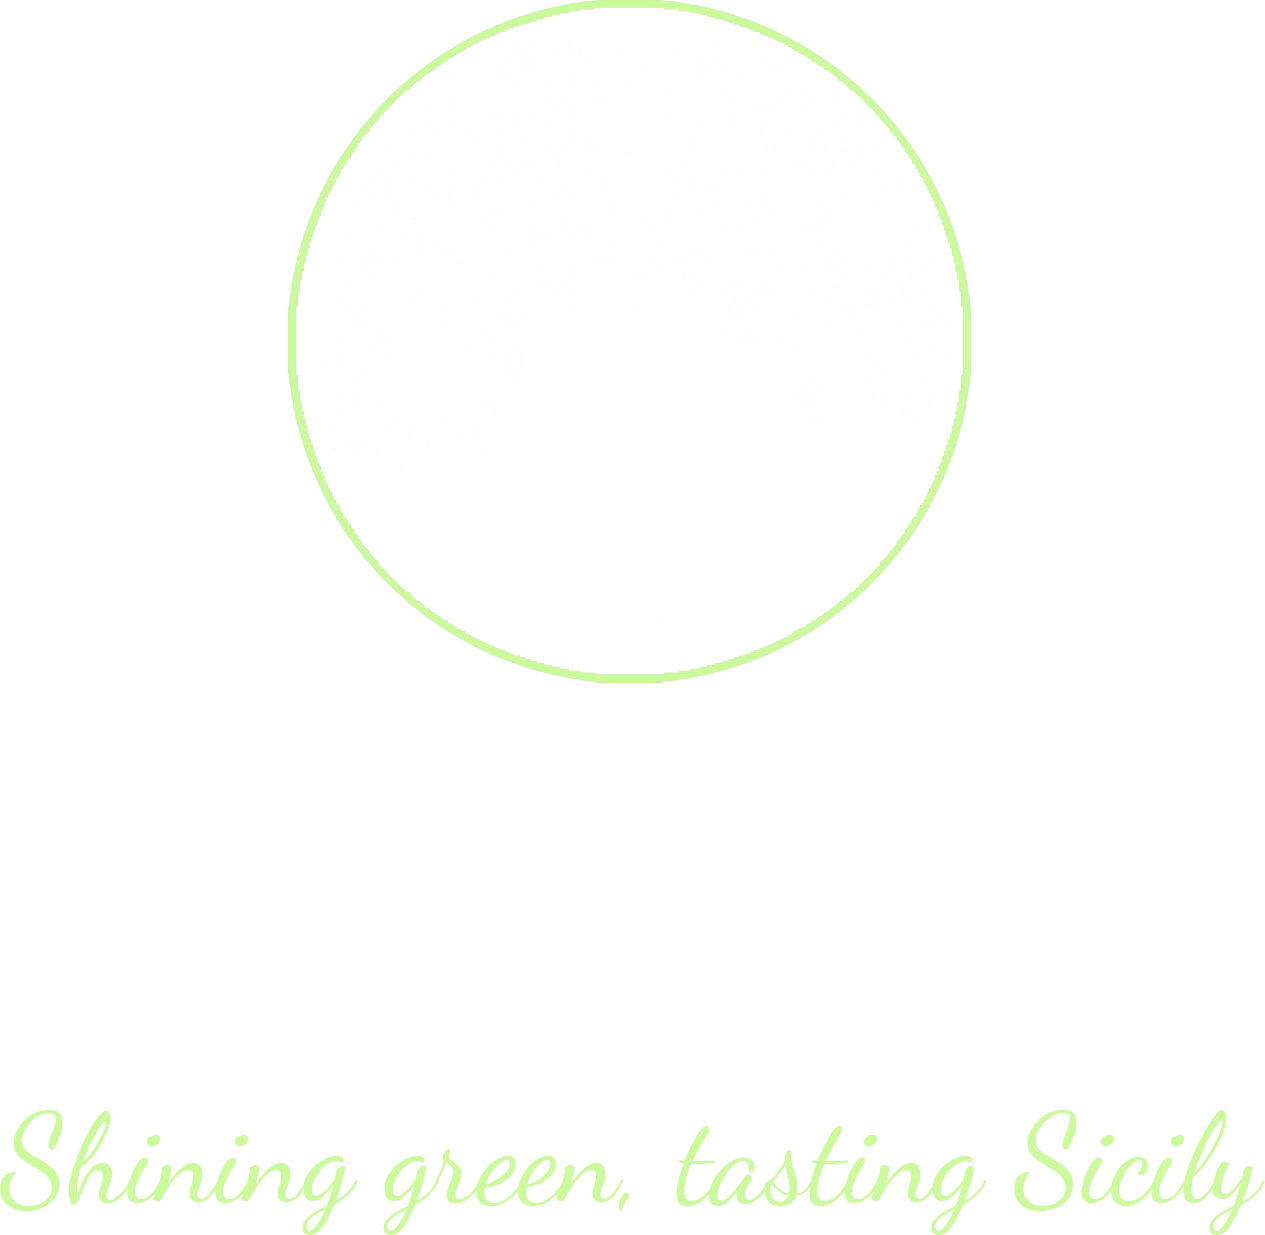 Olio Nocella Logo